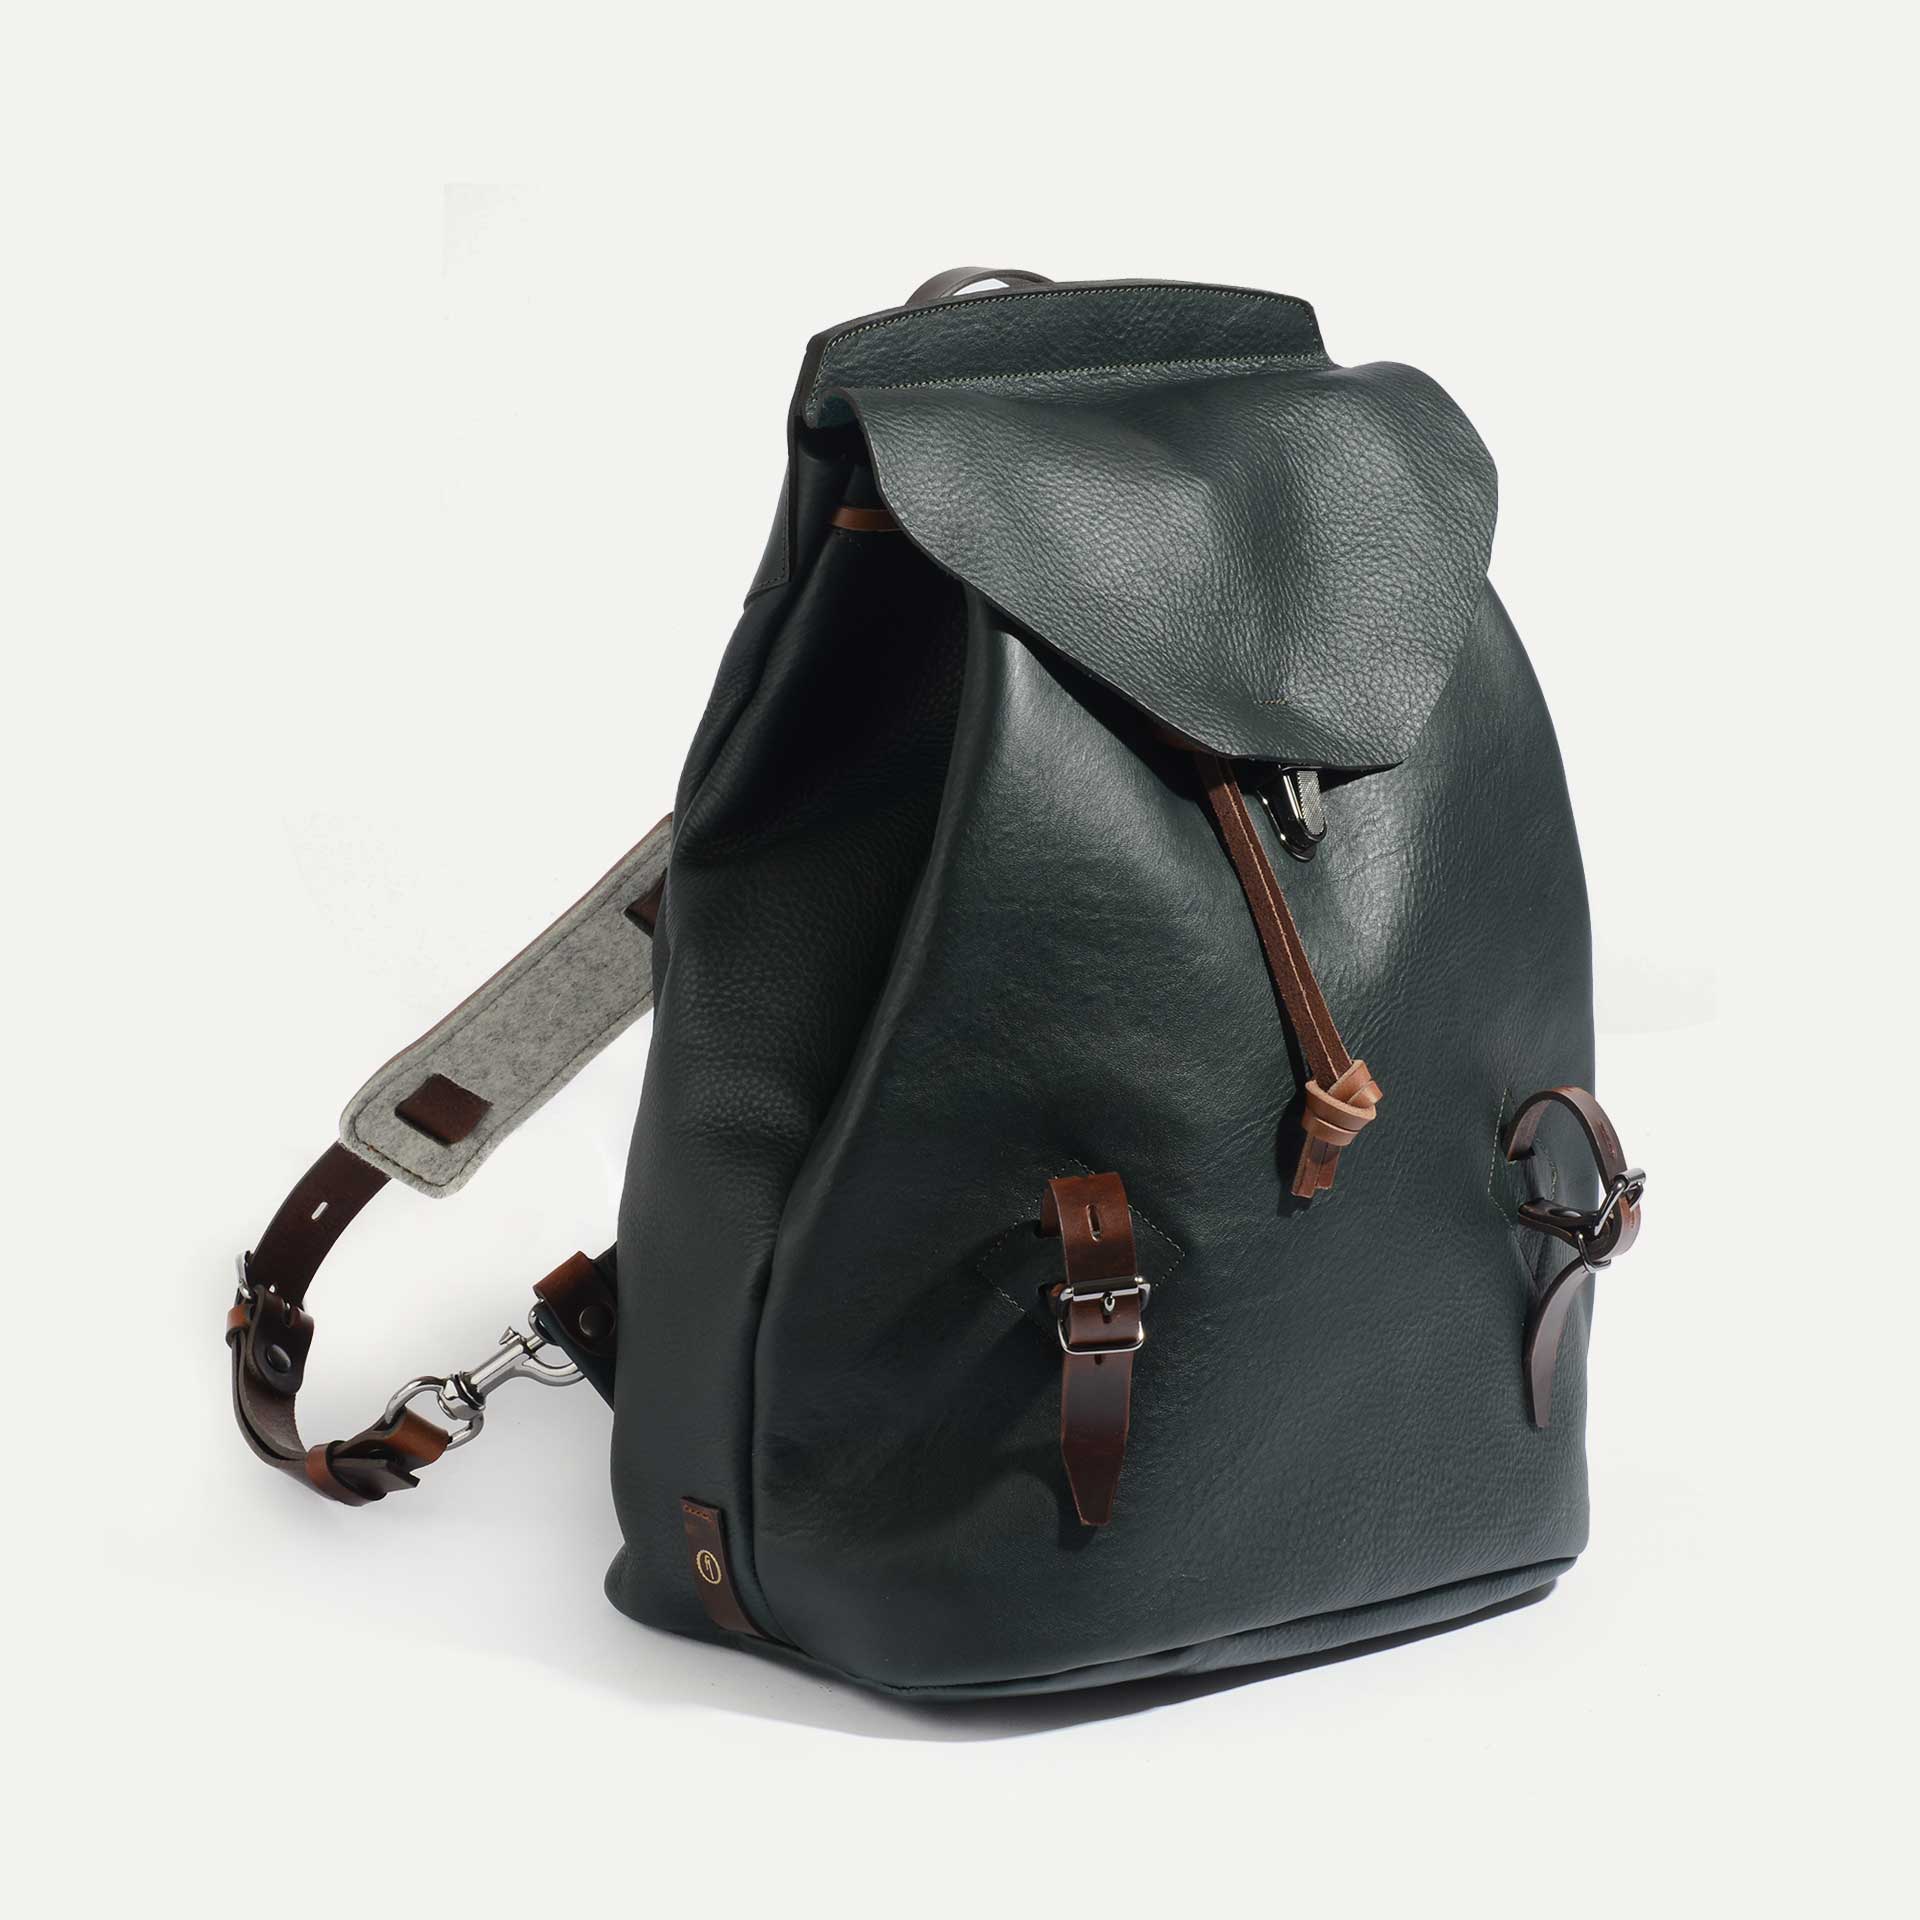 Zibeline backpack on grey background